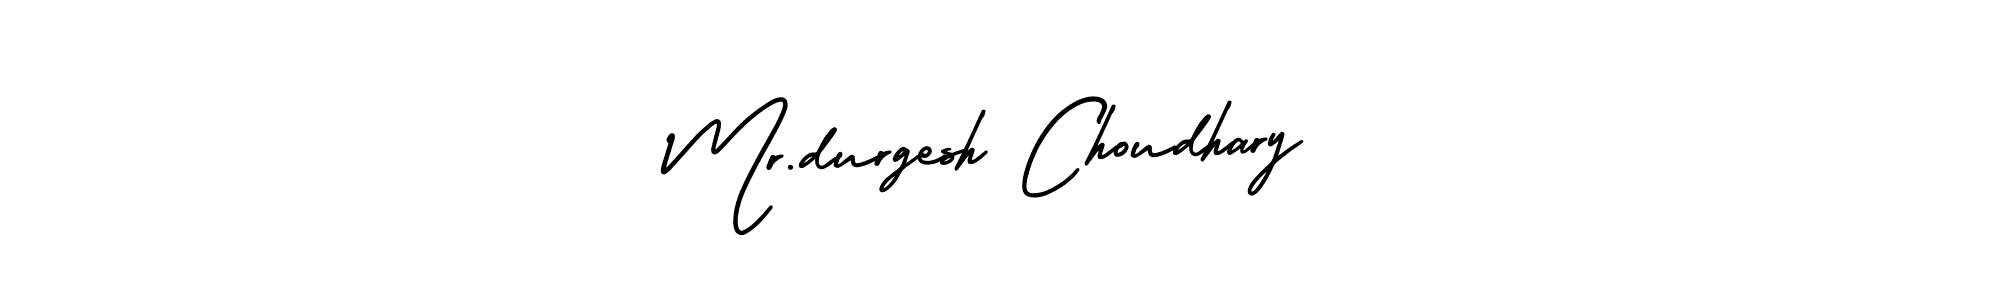 Mr.durgesh Choudhary stylish signature style. Best Handwritten Sign (AmerikaSignatureDemo-Regular) for my name. Handwritten Signature Collection Ideas for my name Mr.durgesh Choudhary. Mr.durgesh Choudhary signature style 3 images and pictures png